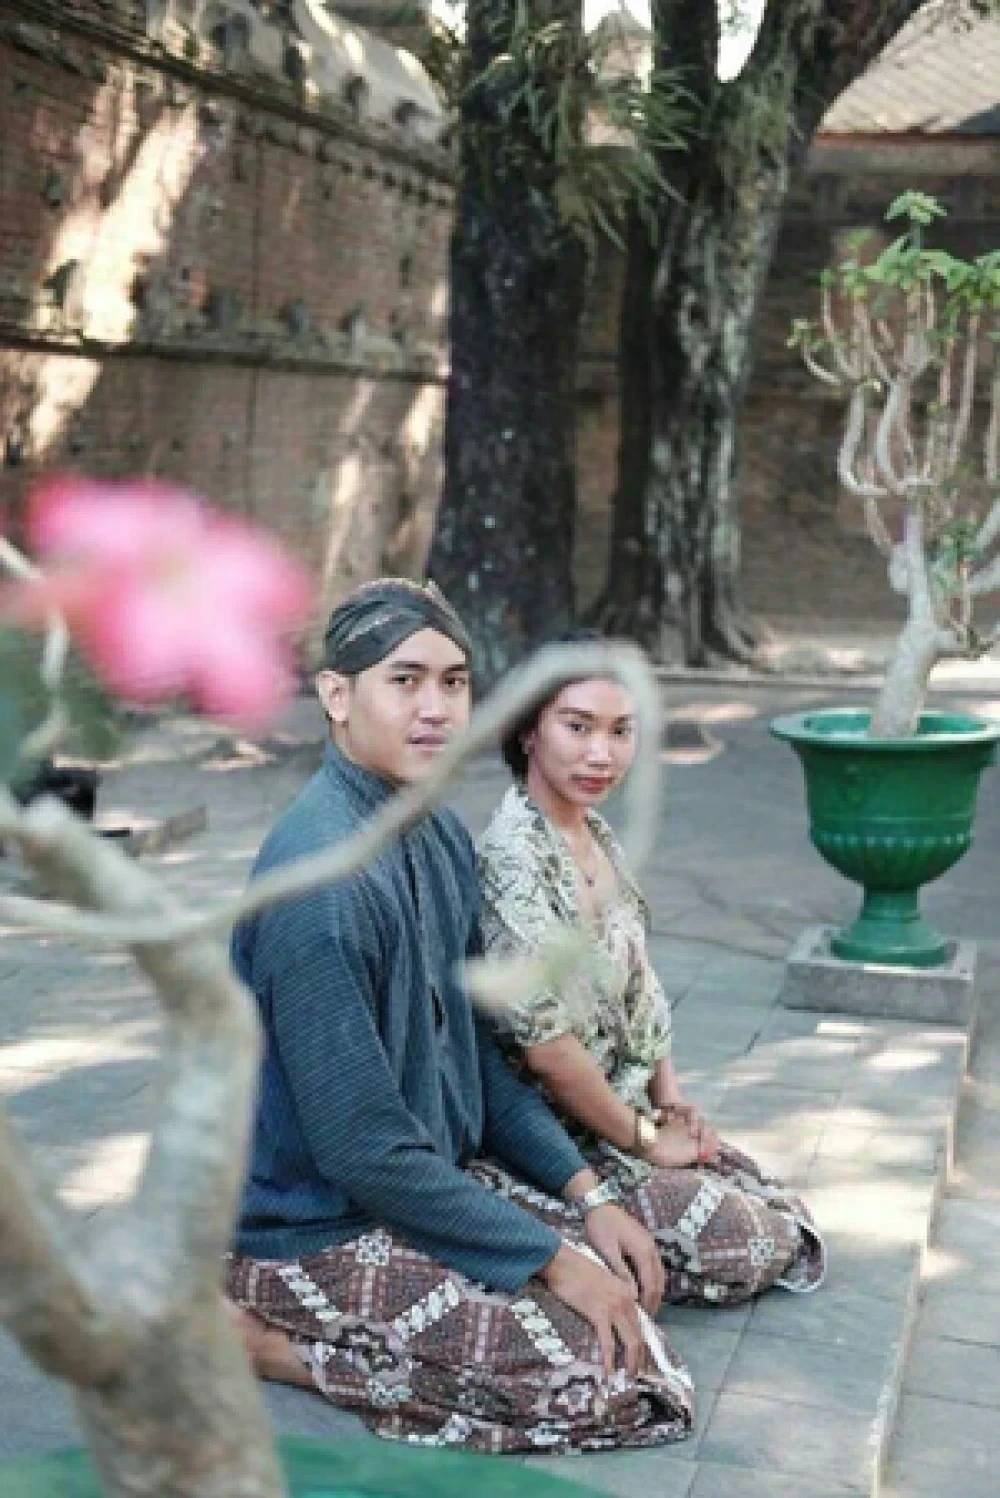 Foto Prewedding Tradisional Jawa Anggun Dan Elegan Dalam Satu Foto Wedding Market